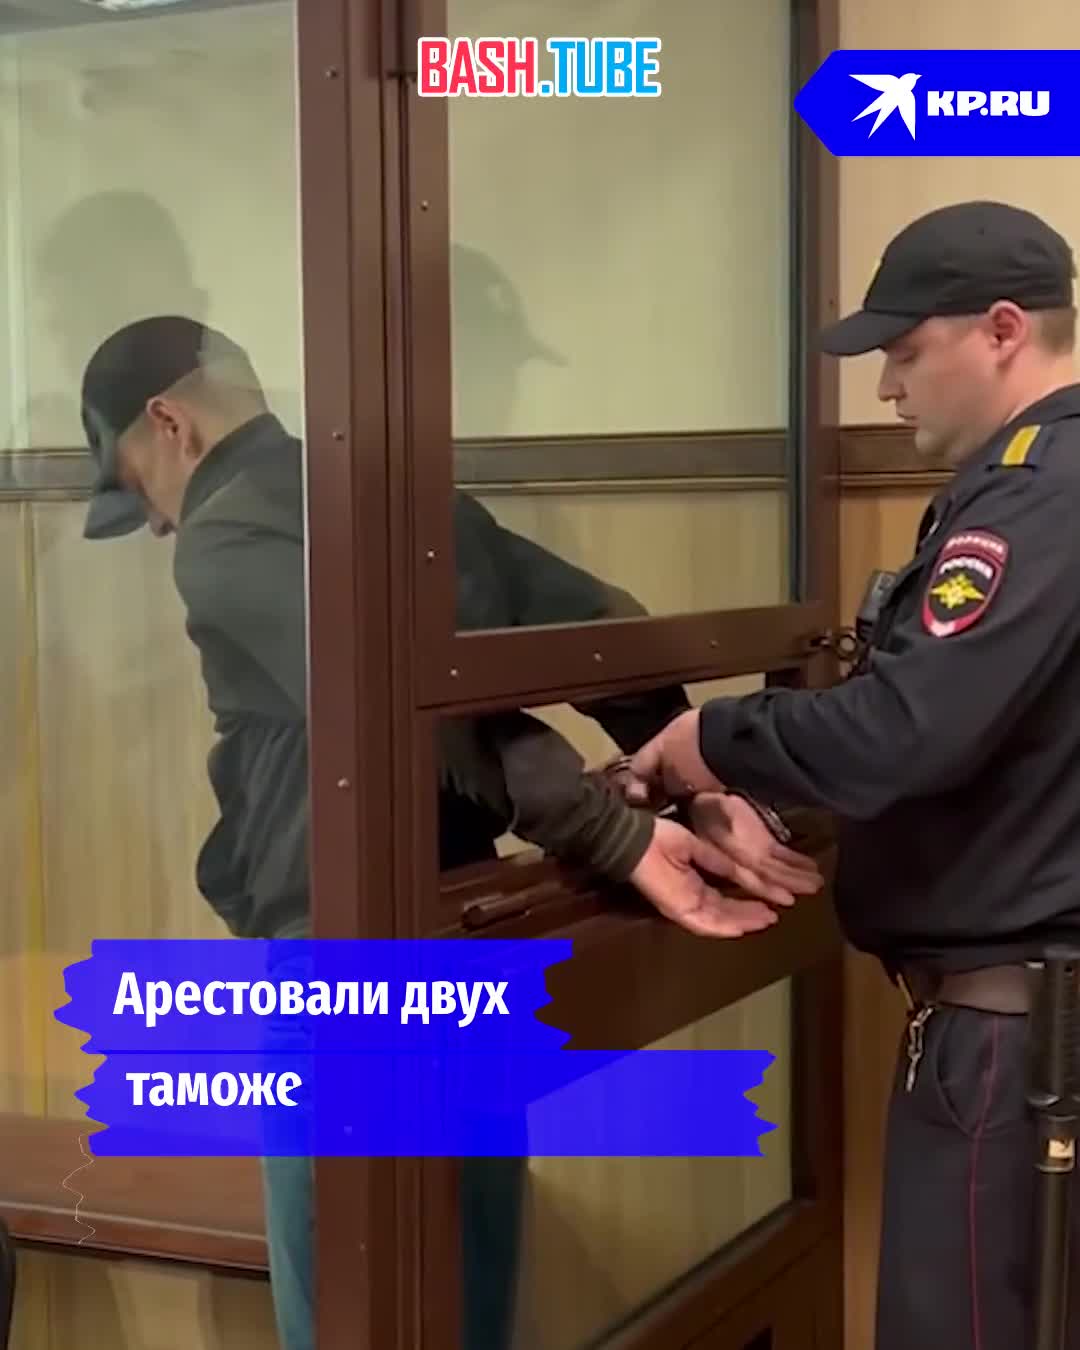 ⁣ В Новосибирске арестовали двух таможенников, которые попались на взятке